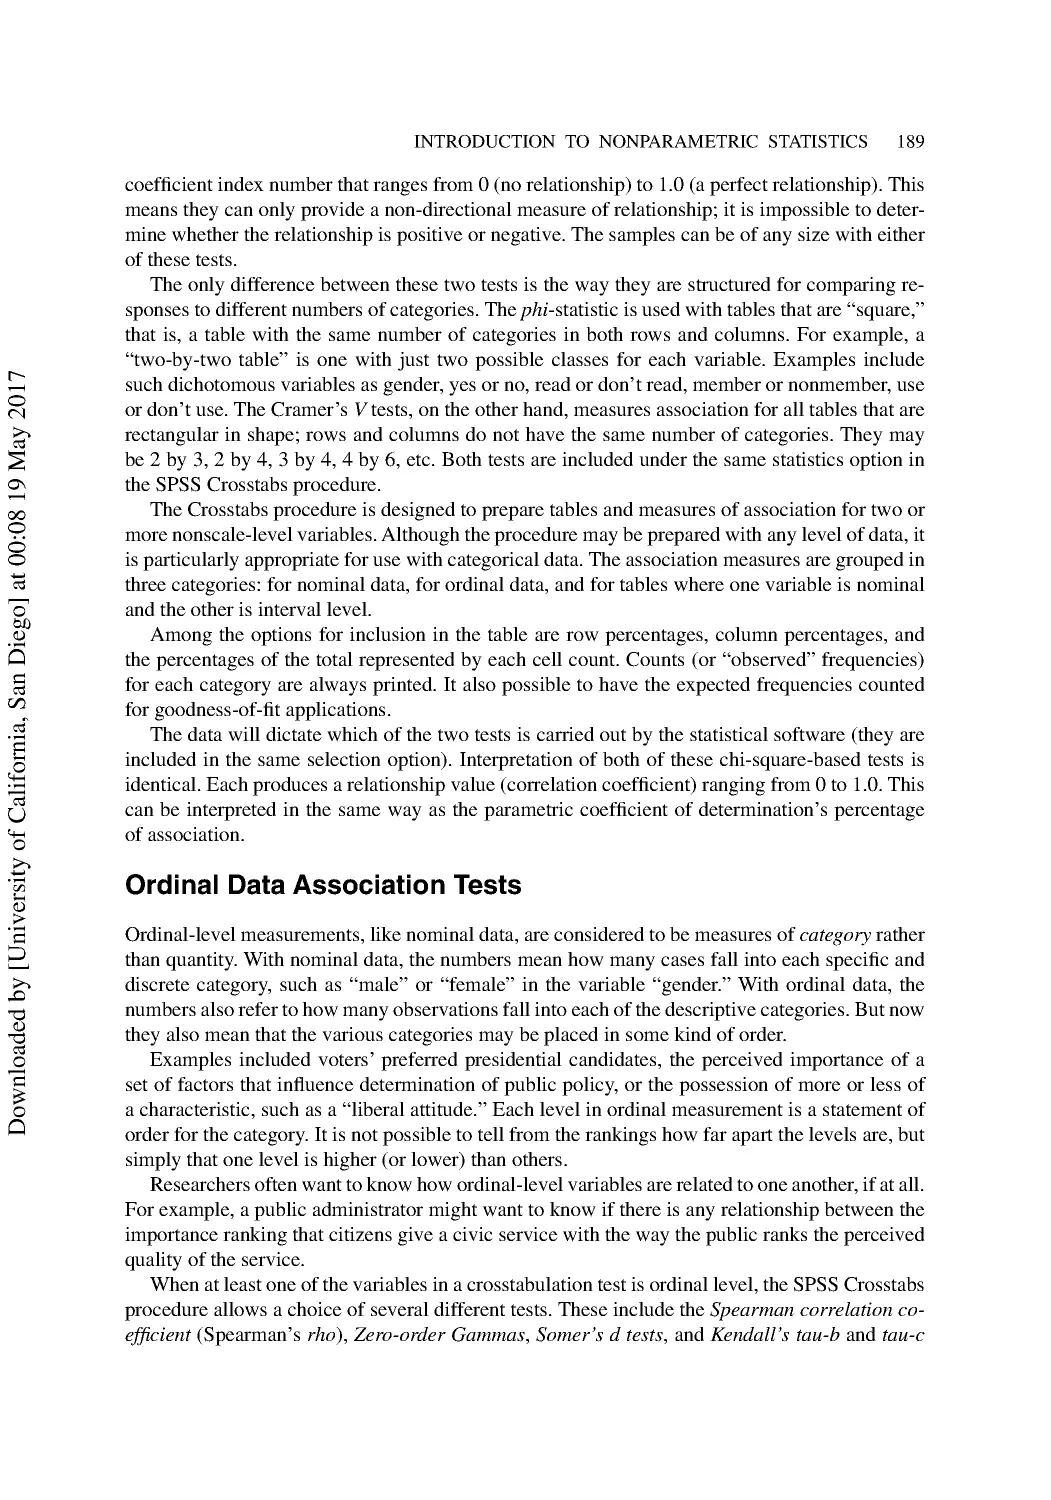 Ordinal Data Association Tests